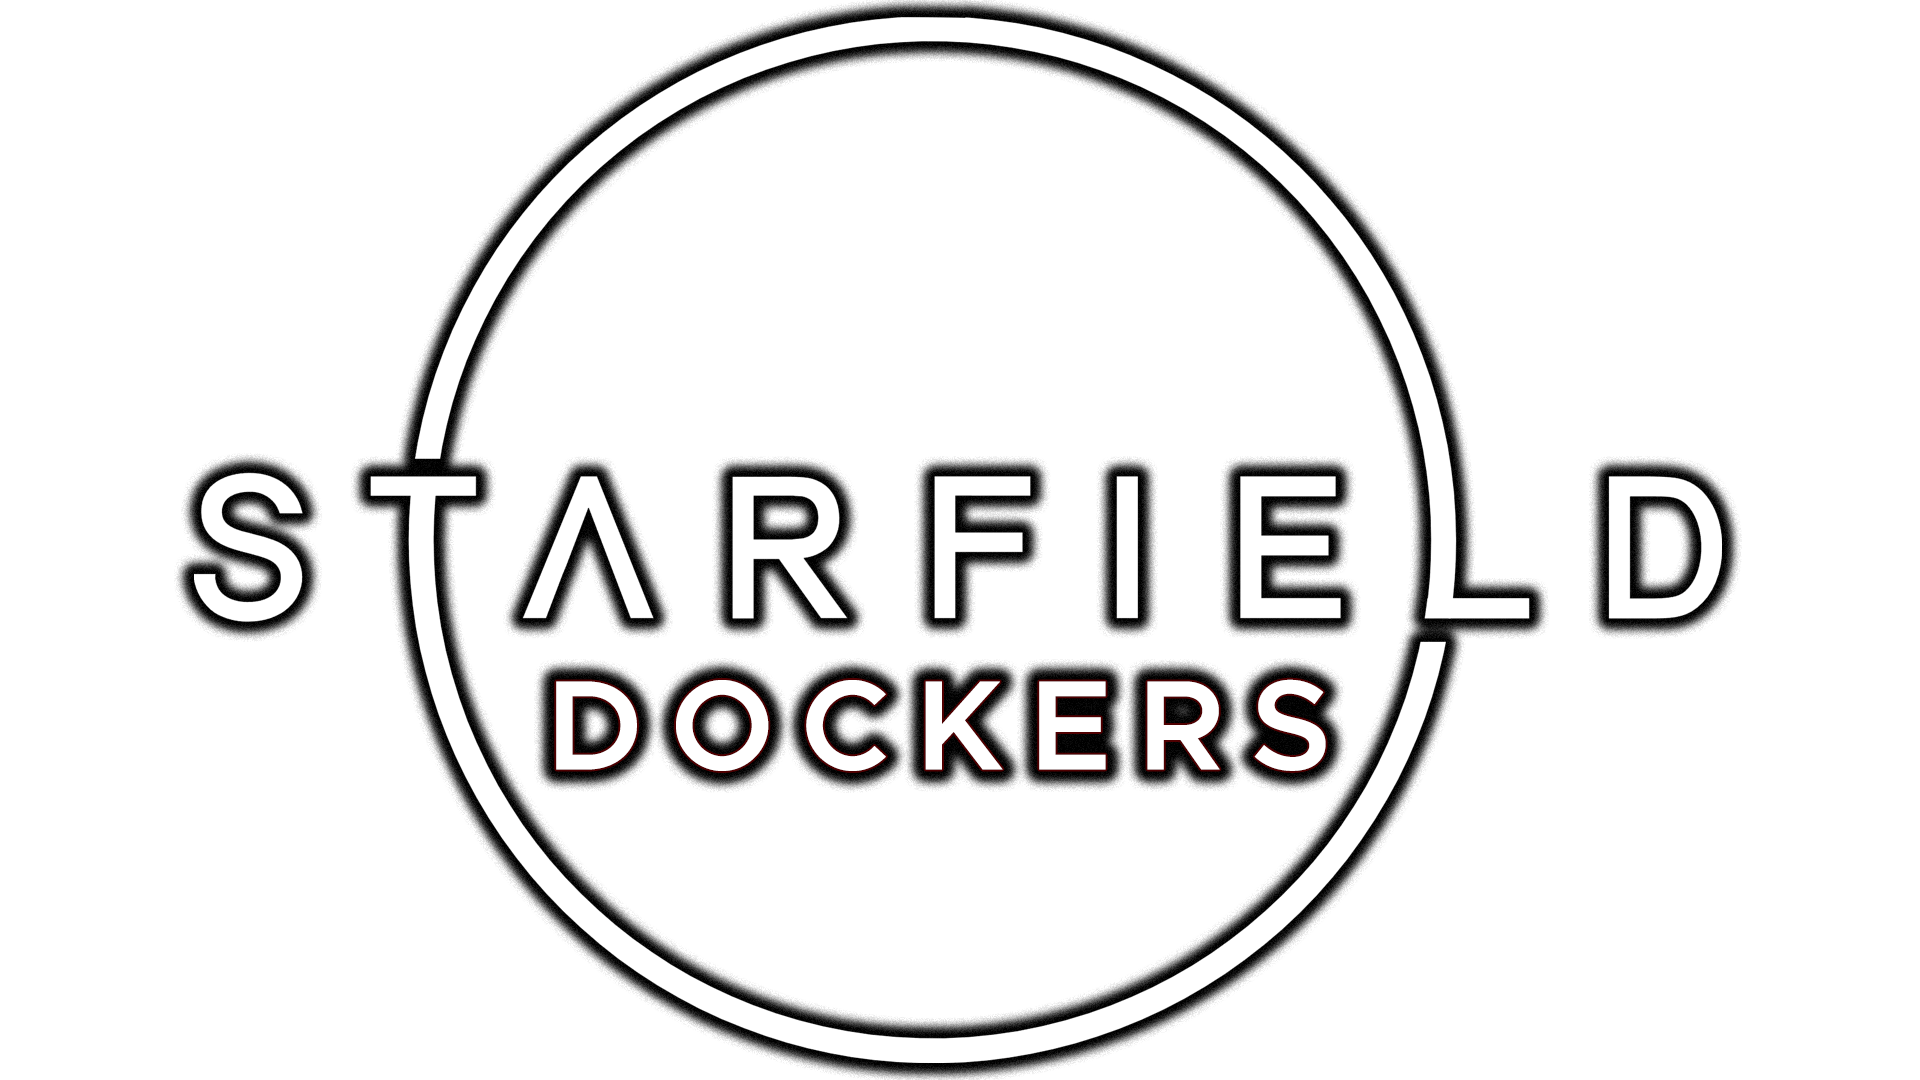 starfield dockers wiki guide min